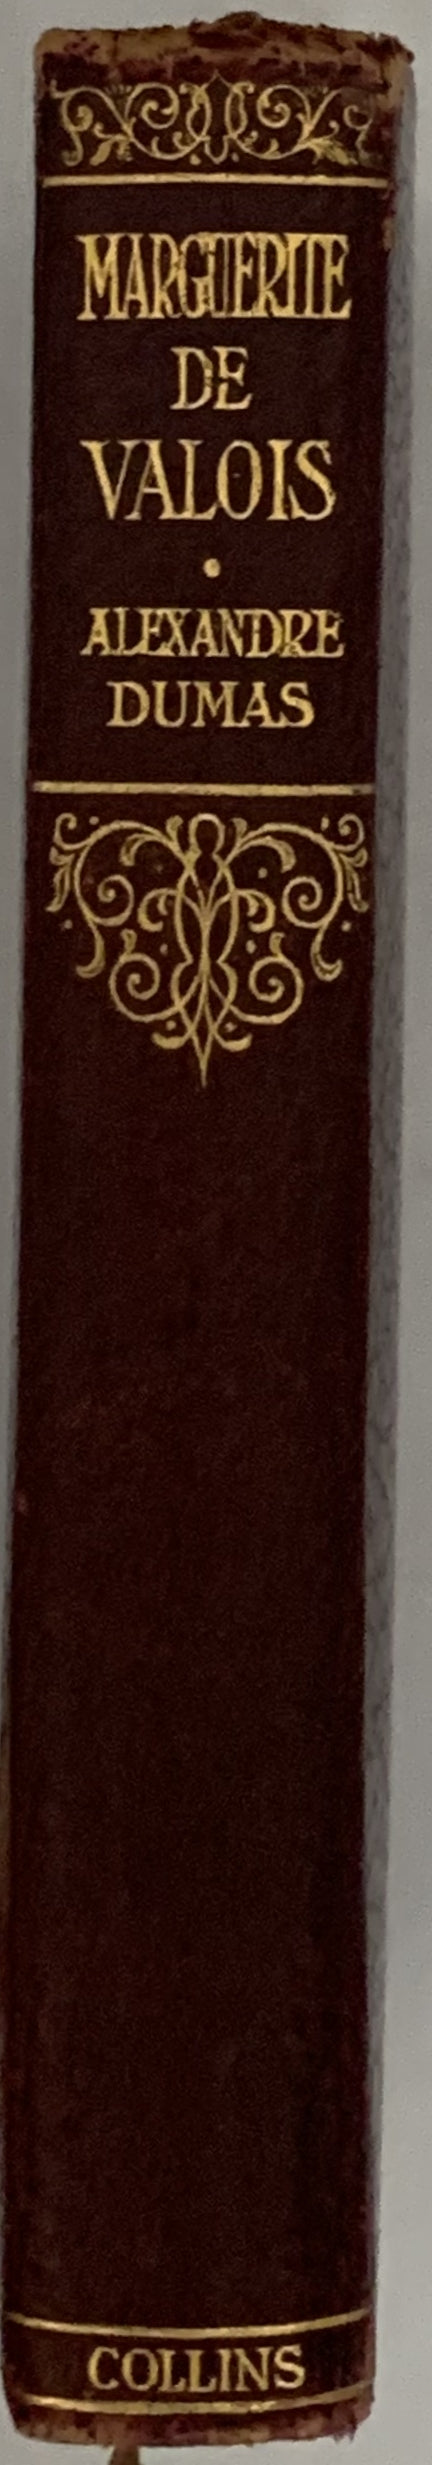 Marguerite Valois by Alexandre Dumas